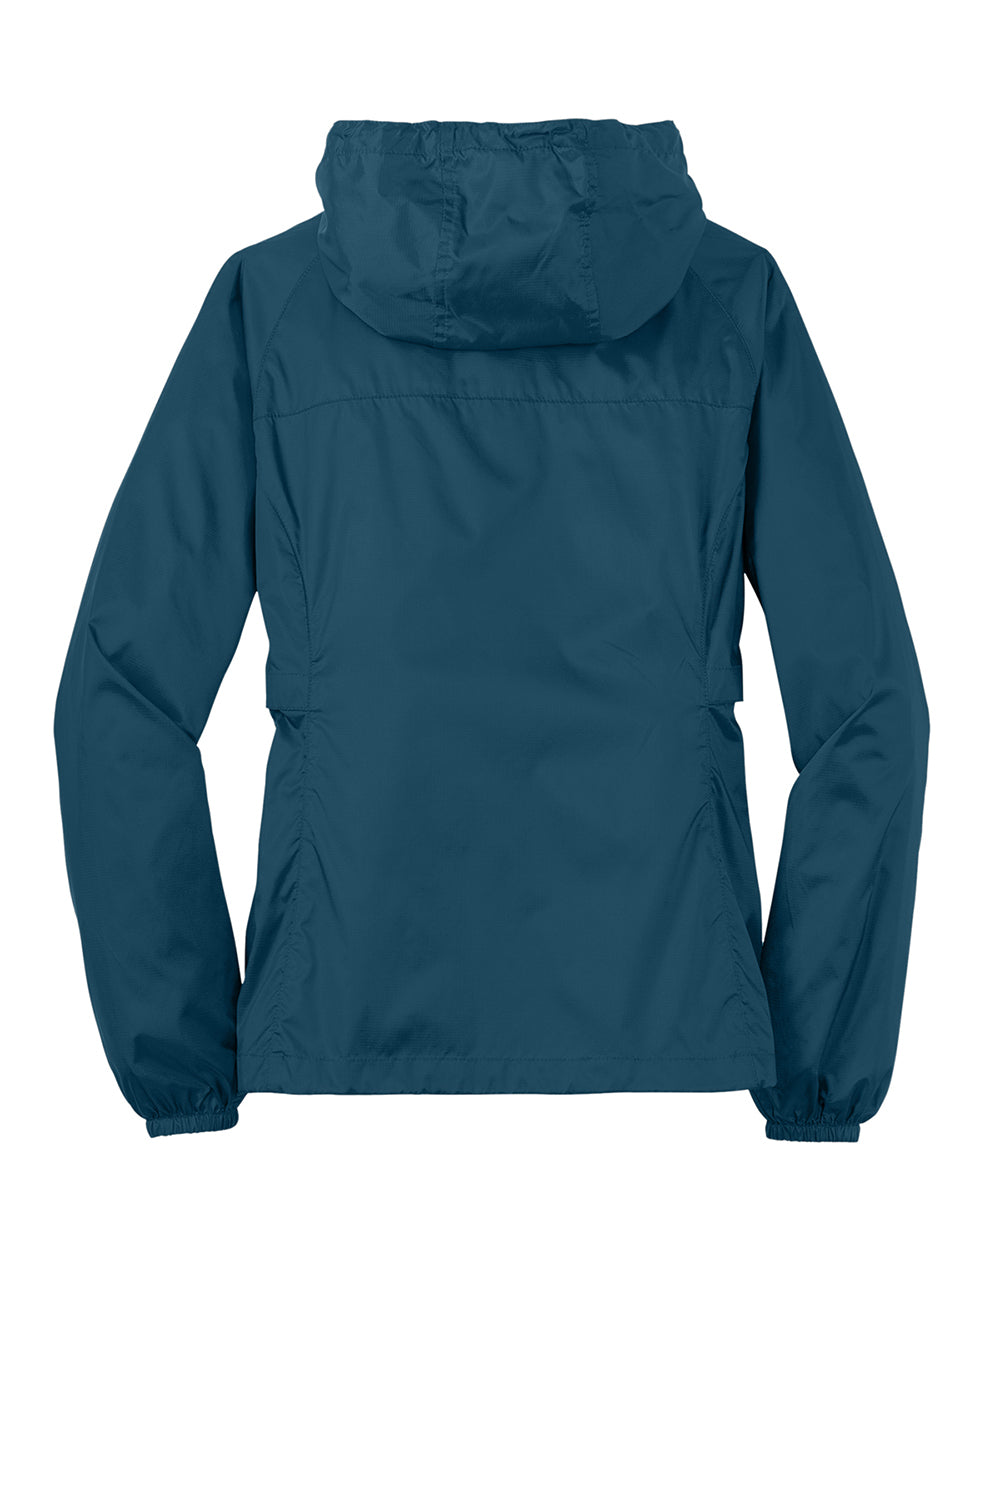 Eddie Bauer EB501 Womens Packable Wind Resistant Full Zip Hooded Jacket Adriatic Blue Flat Back